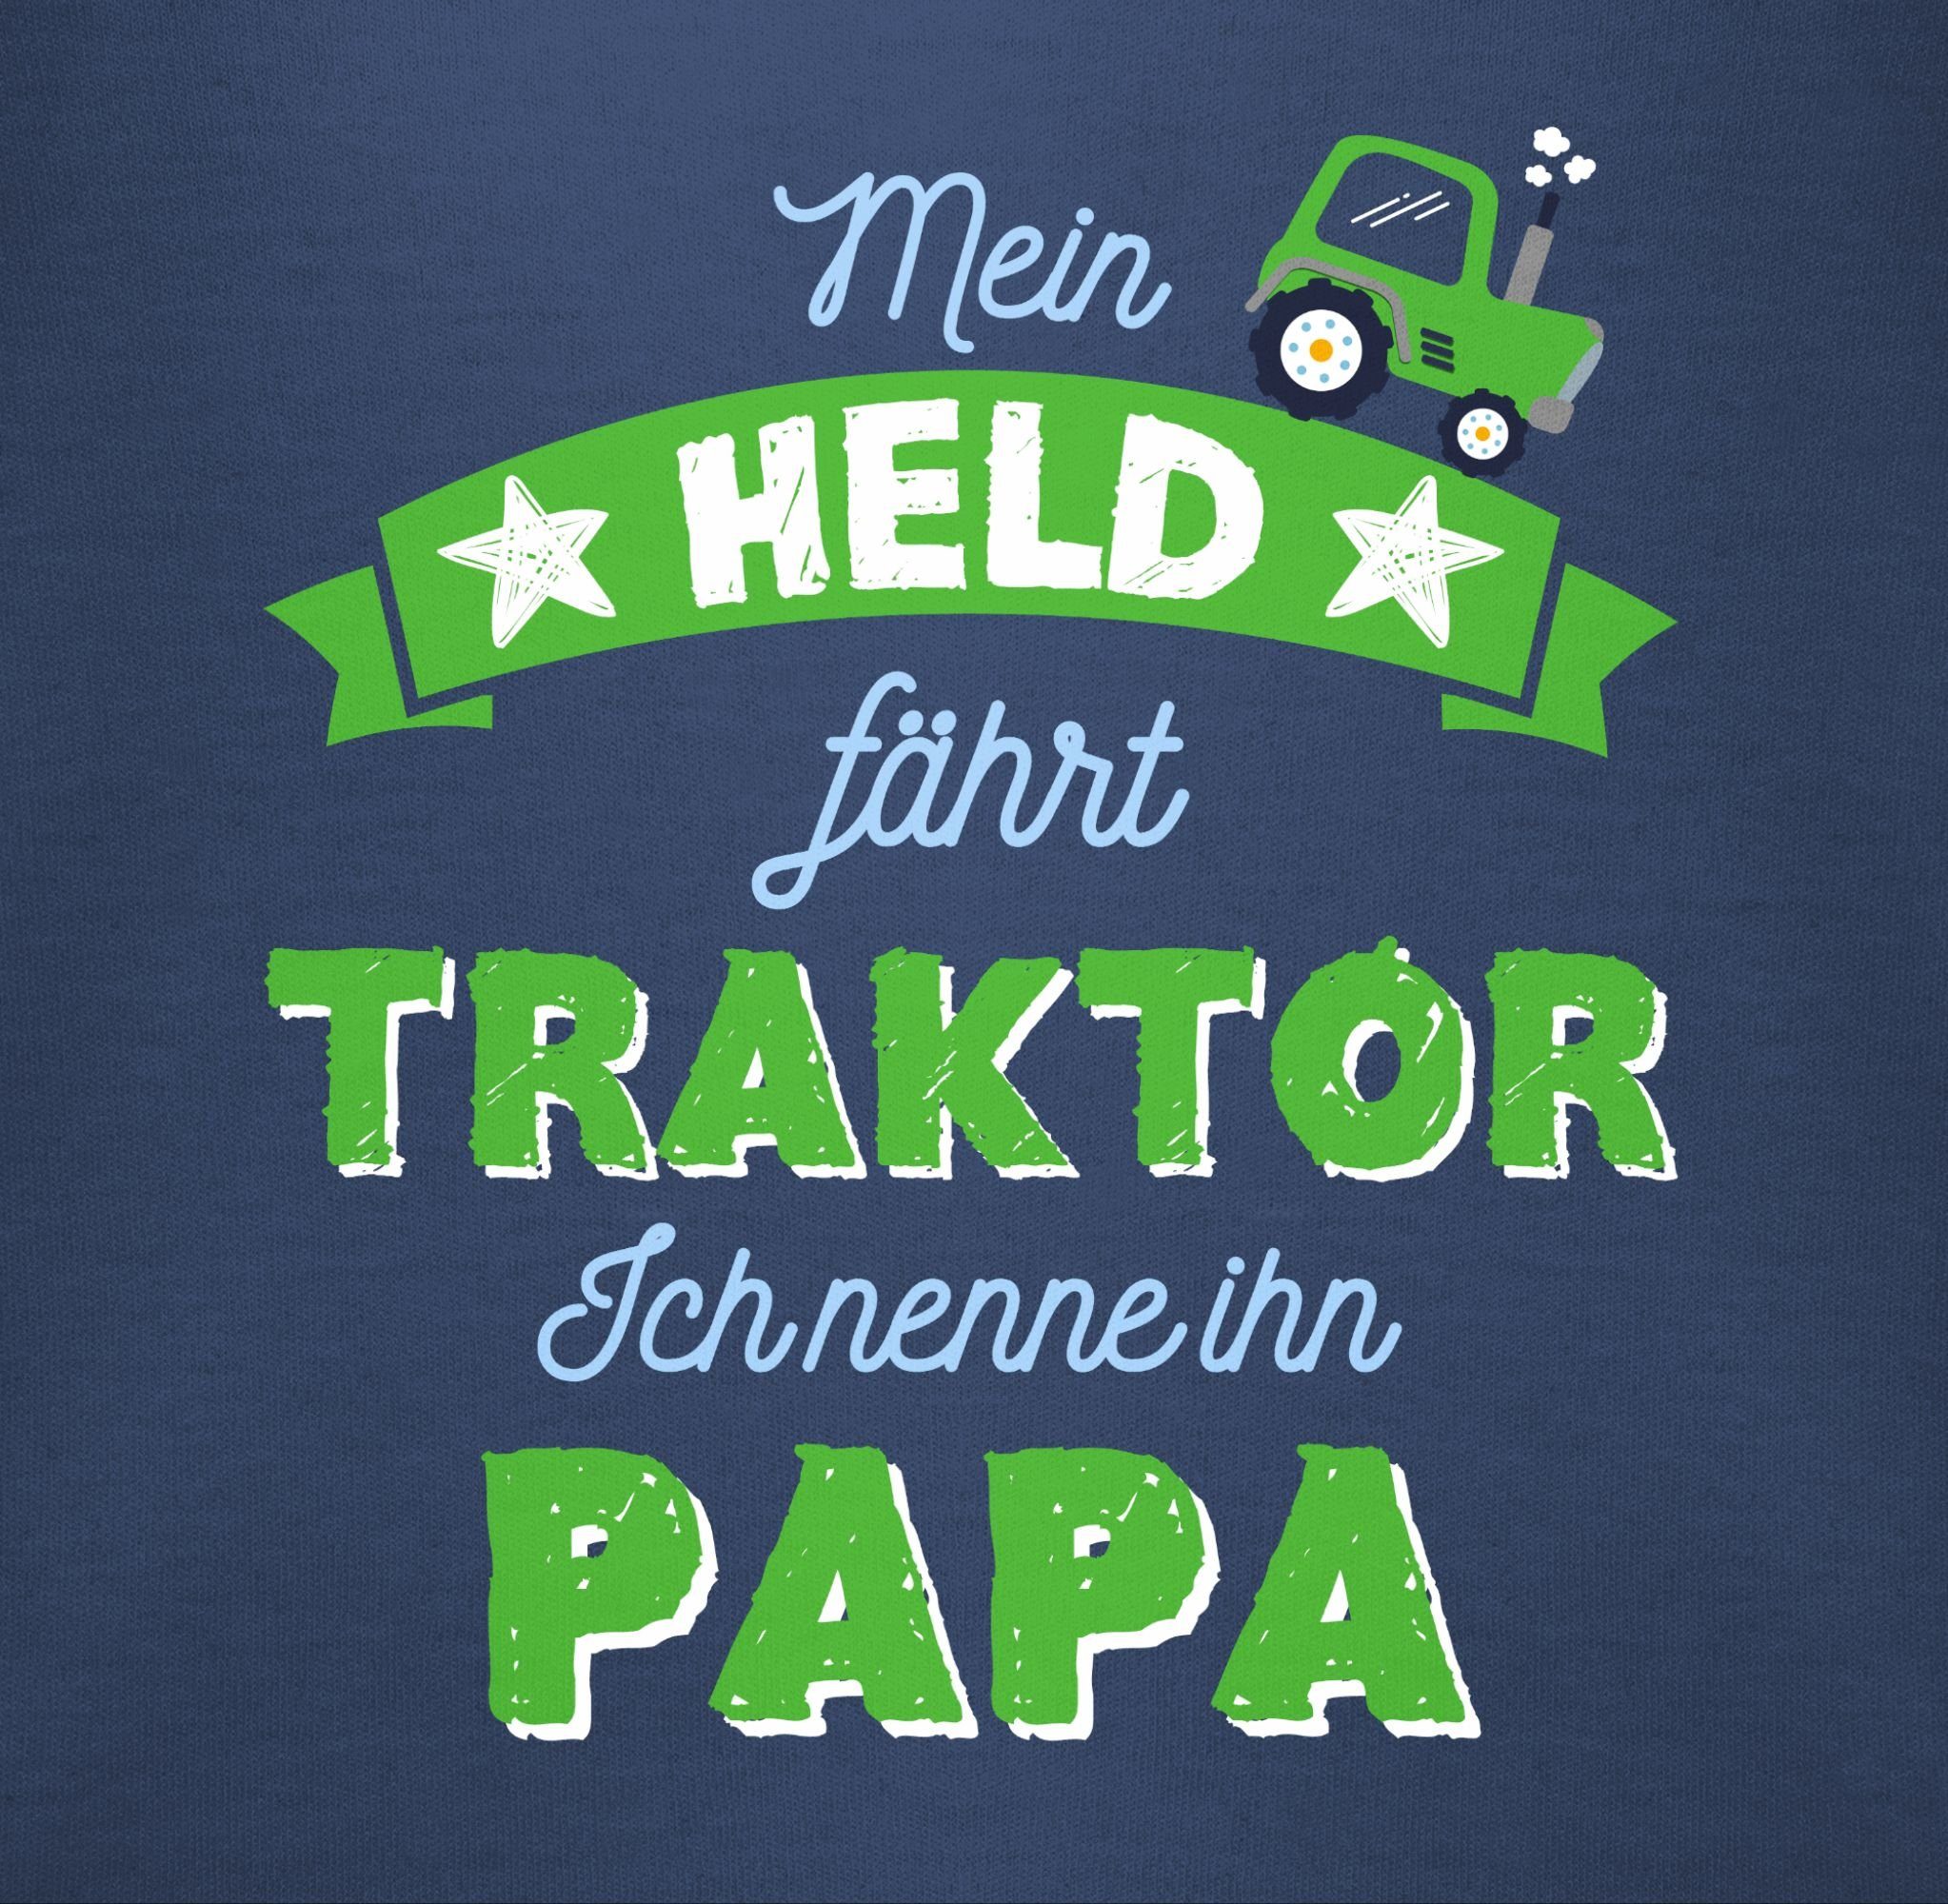 Shirtbody 1 Blau Traktor Vatertag fährt Mein Shirtracer Geschenk Baby Held Papa Navy